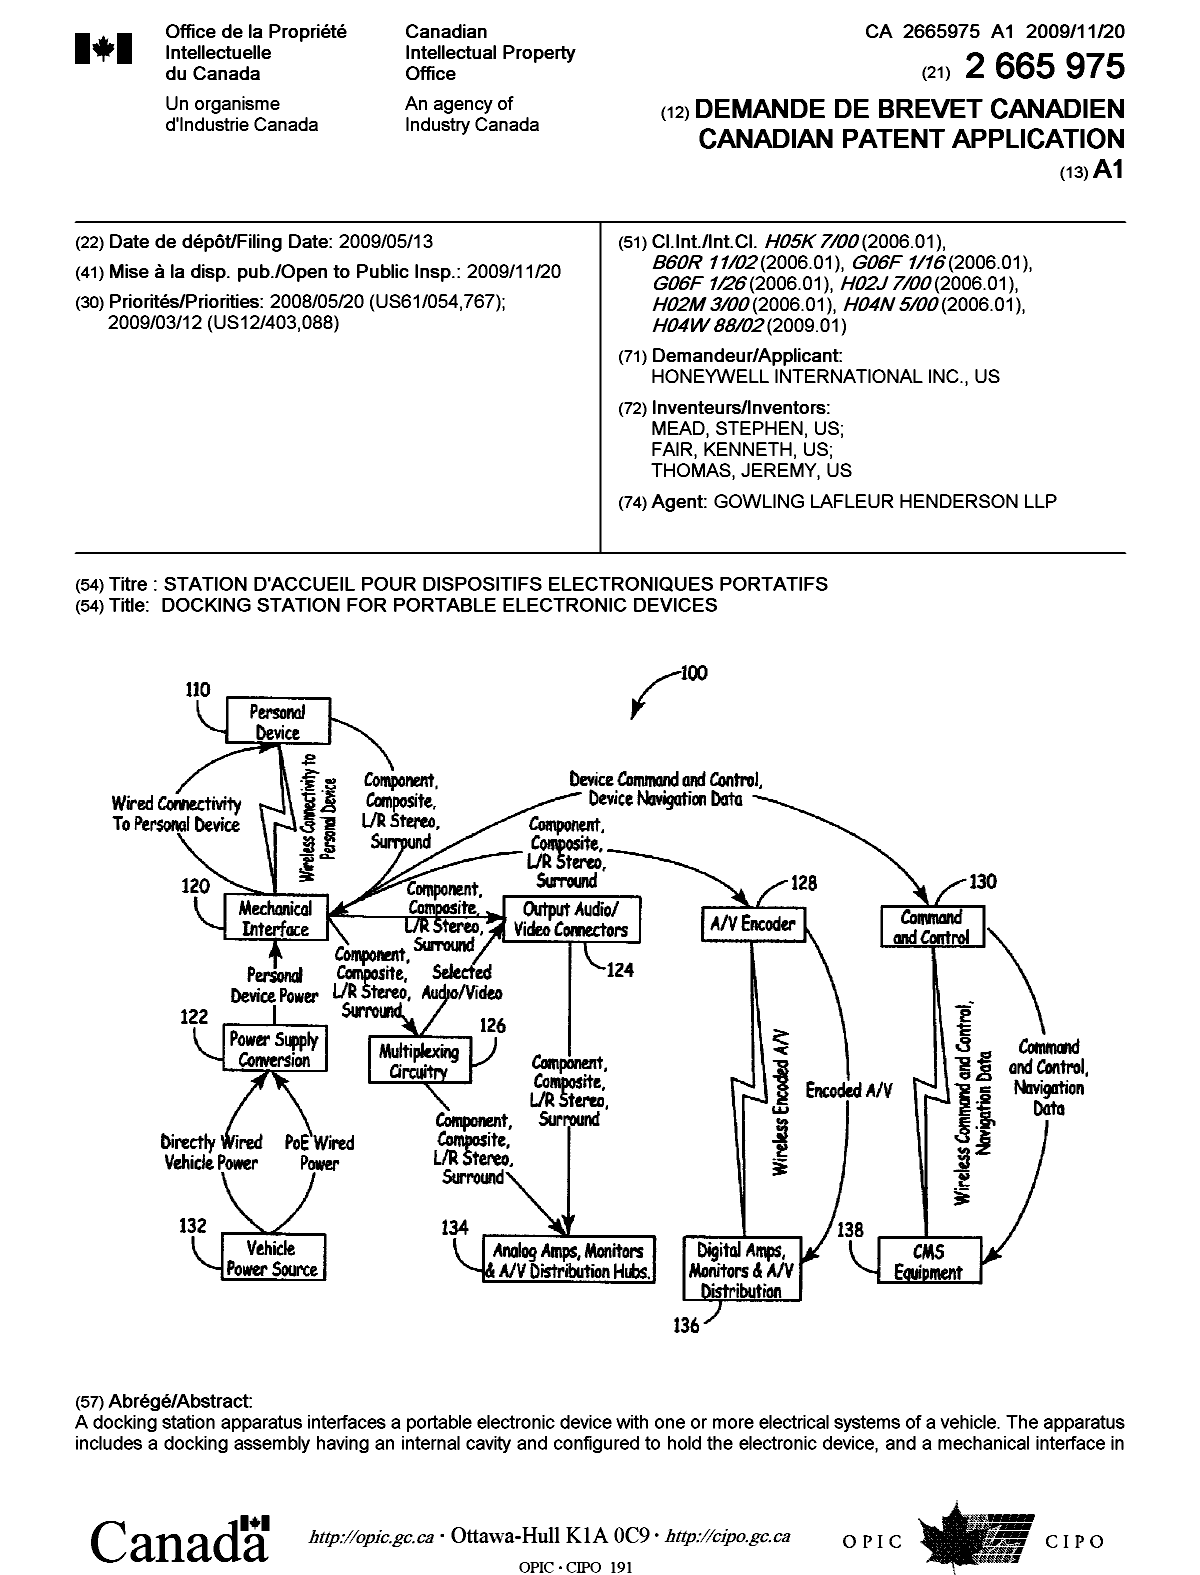 Document de brevet canadien 2665975. Page couverture 20091113. Image 1 de 2